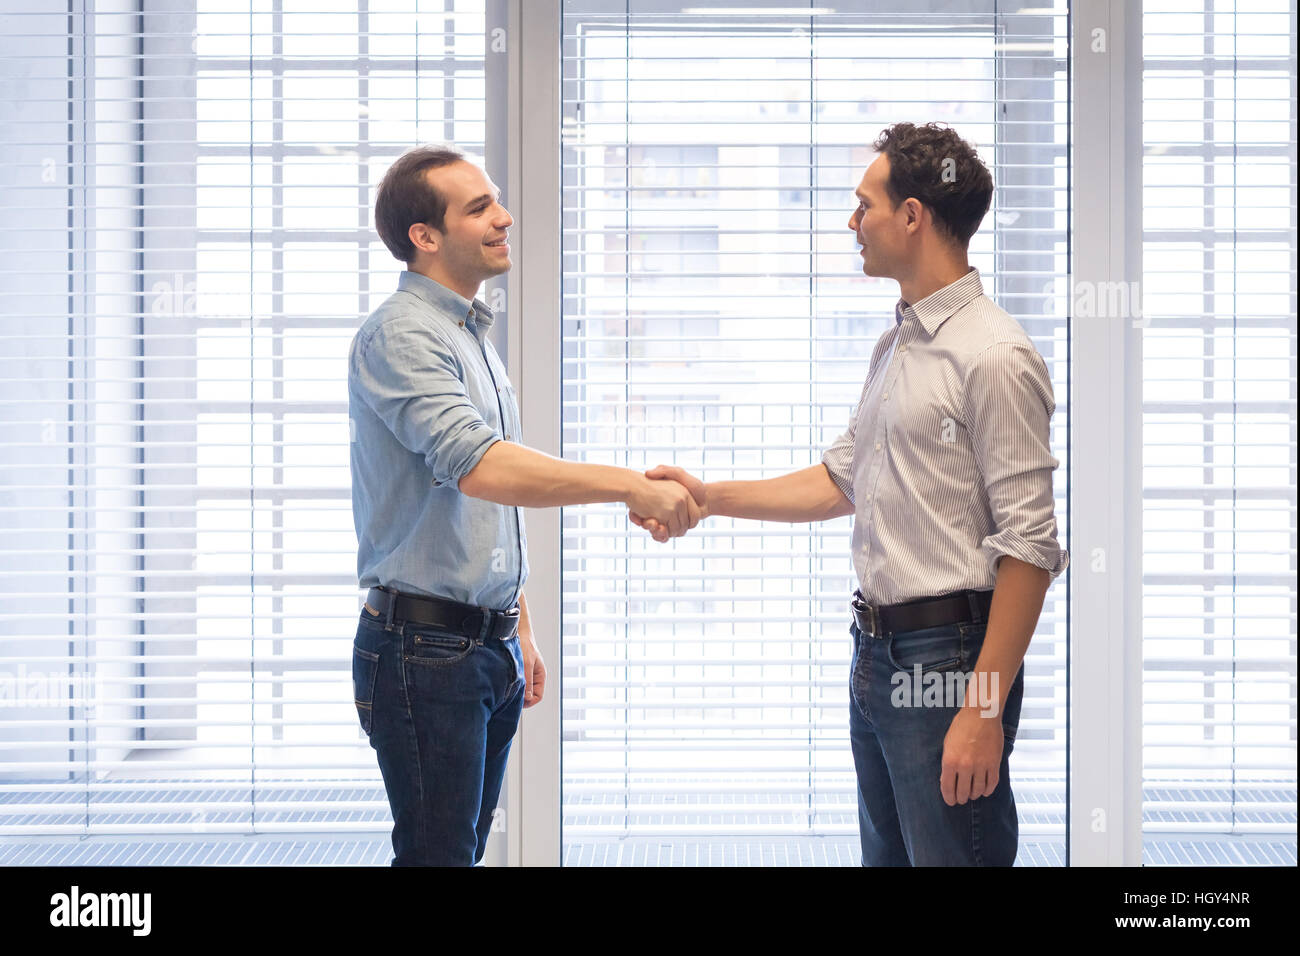 Zwei Kollegen in eine moderne Büroeinrichtung beiläufig Händeschütteln gekleidet, als Symbol des Abkommens Stockfoto